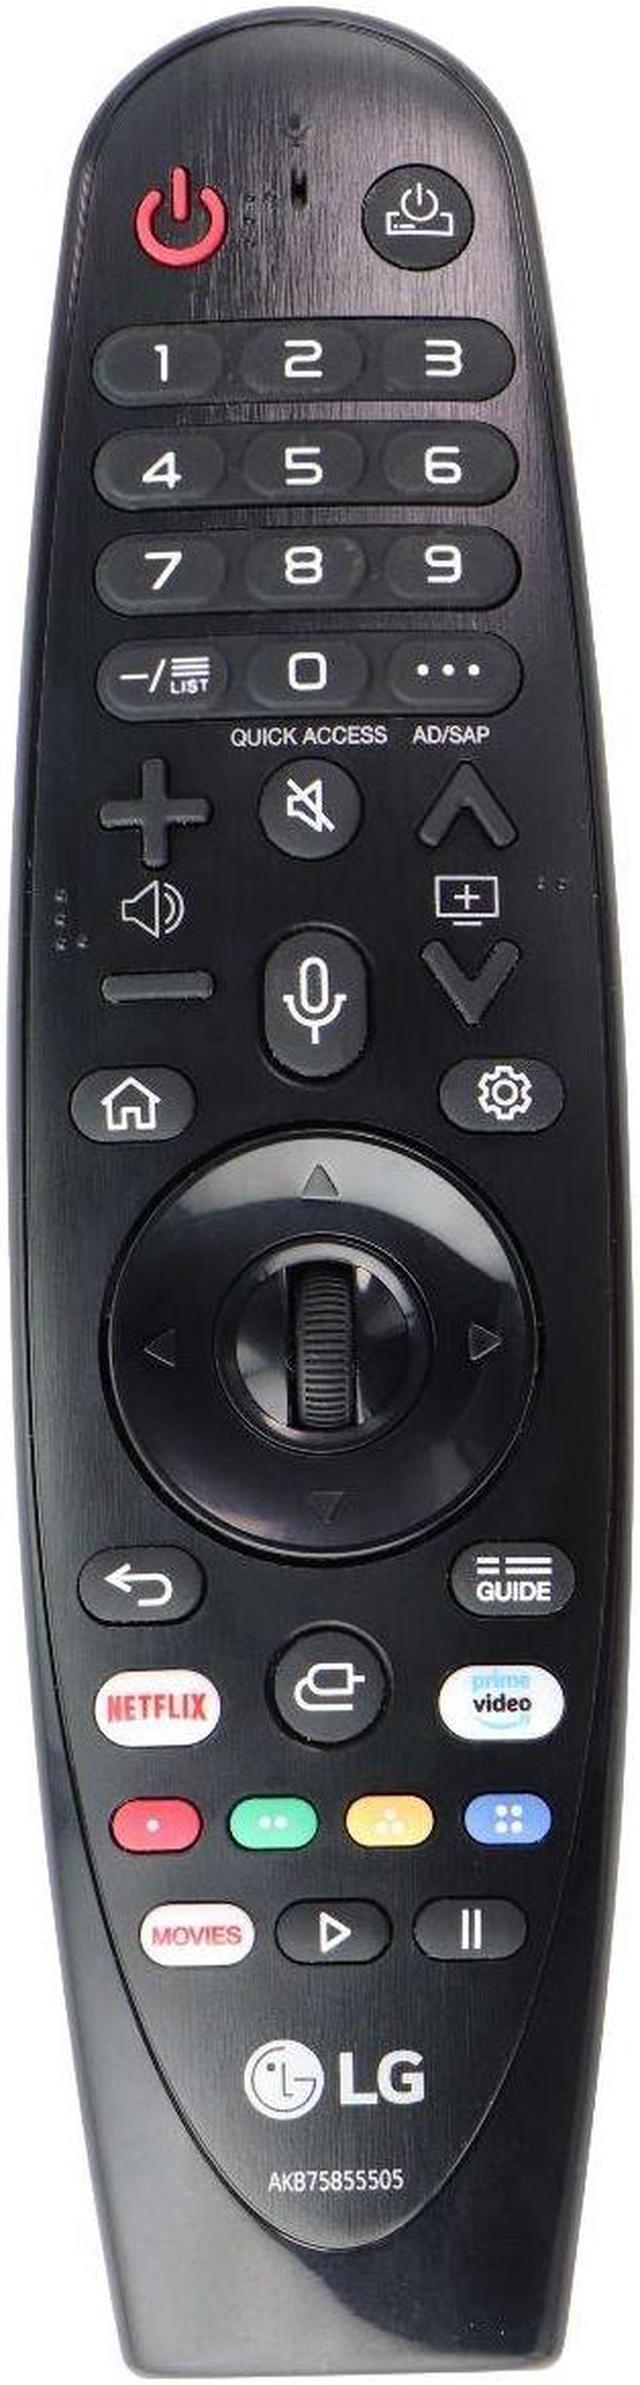 Control Magic Remote LG MR20GA Negro